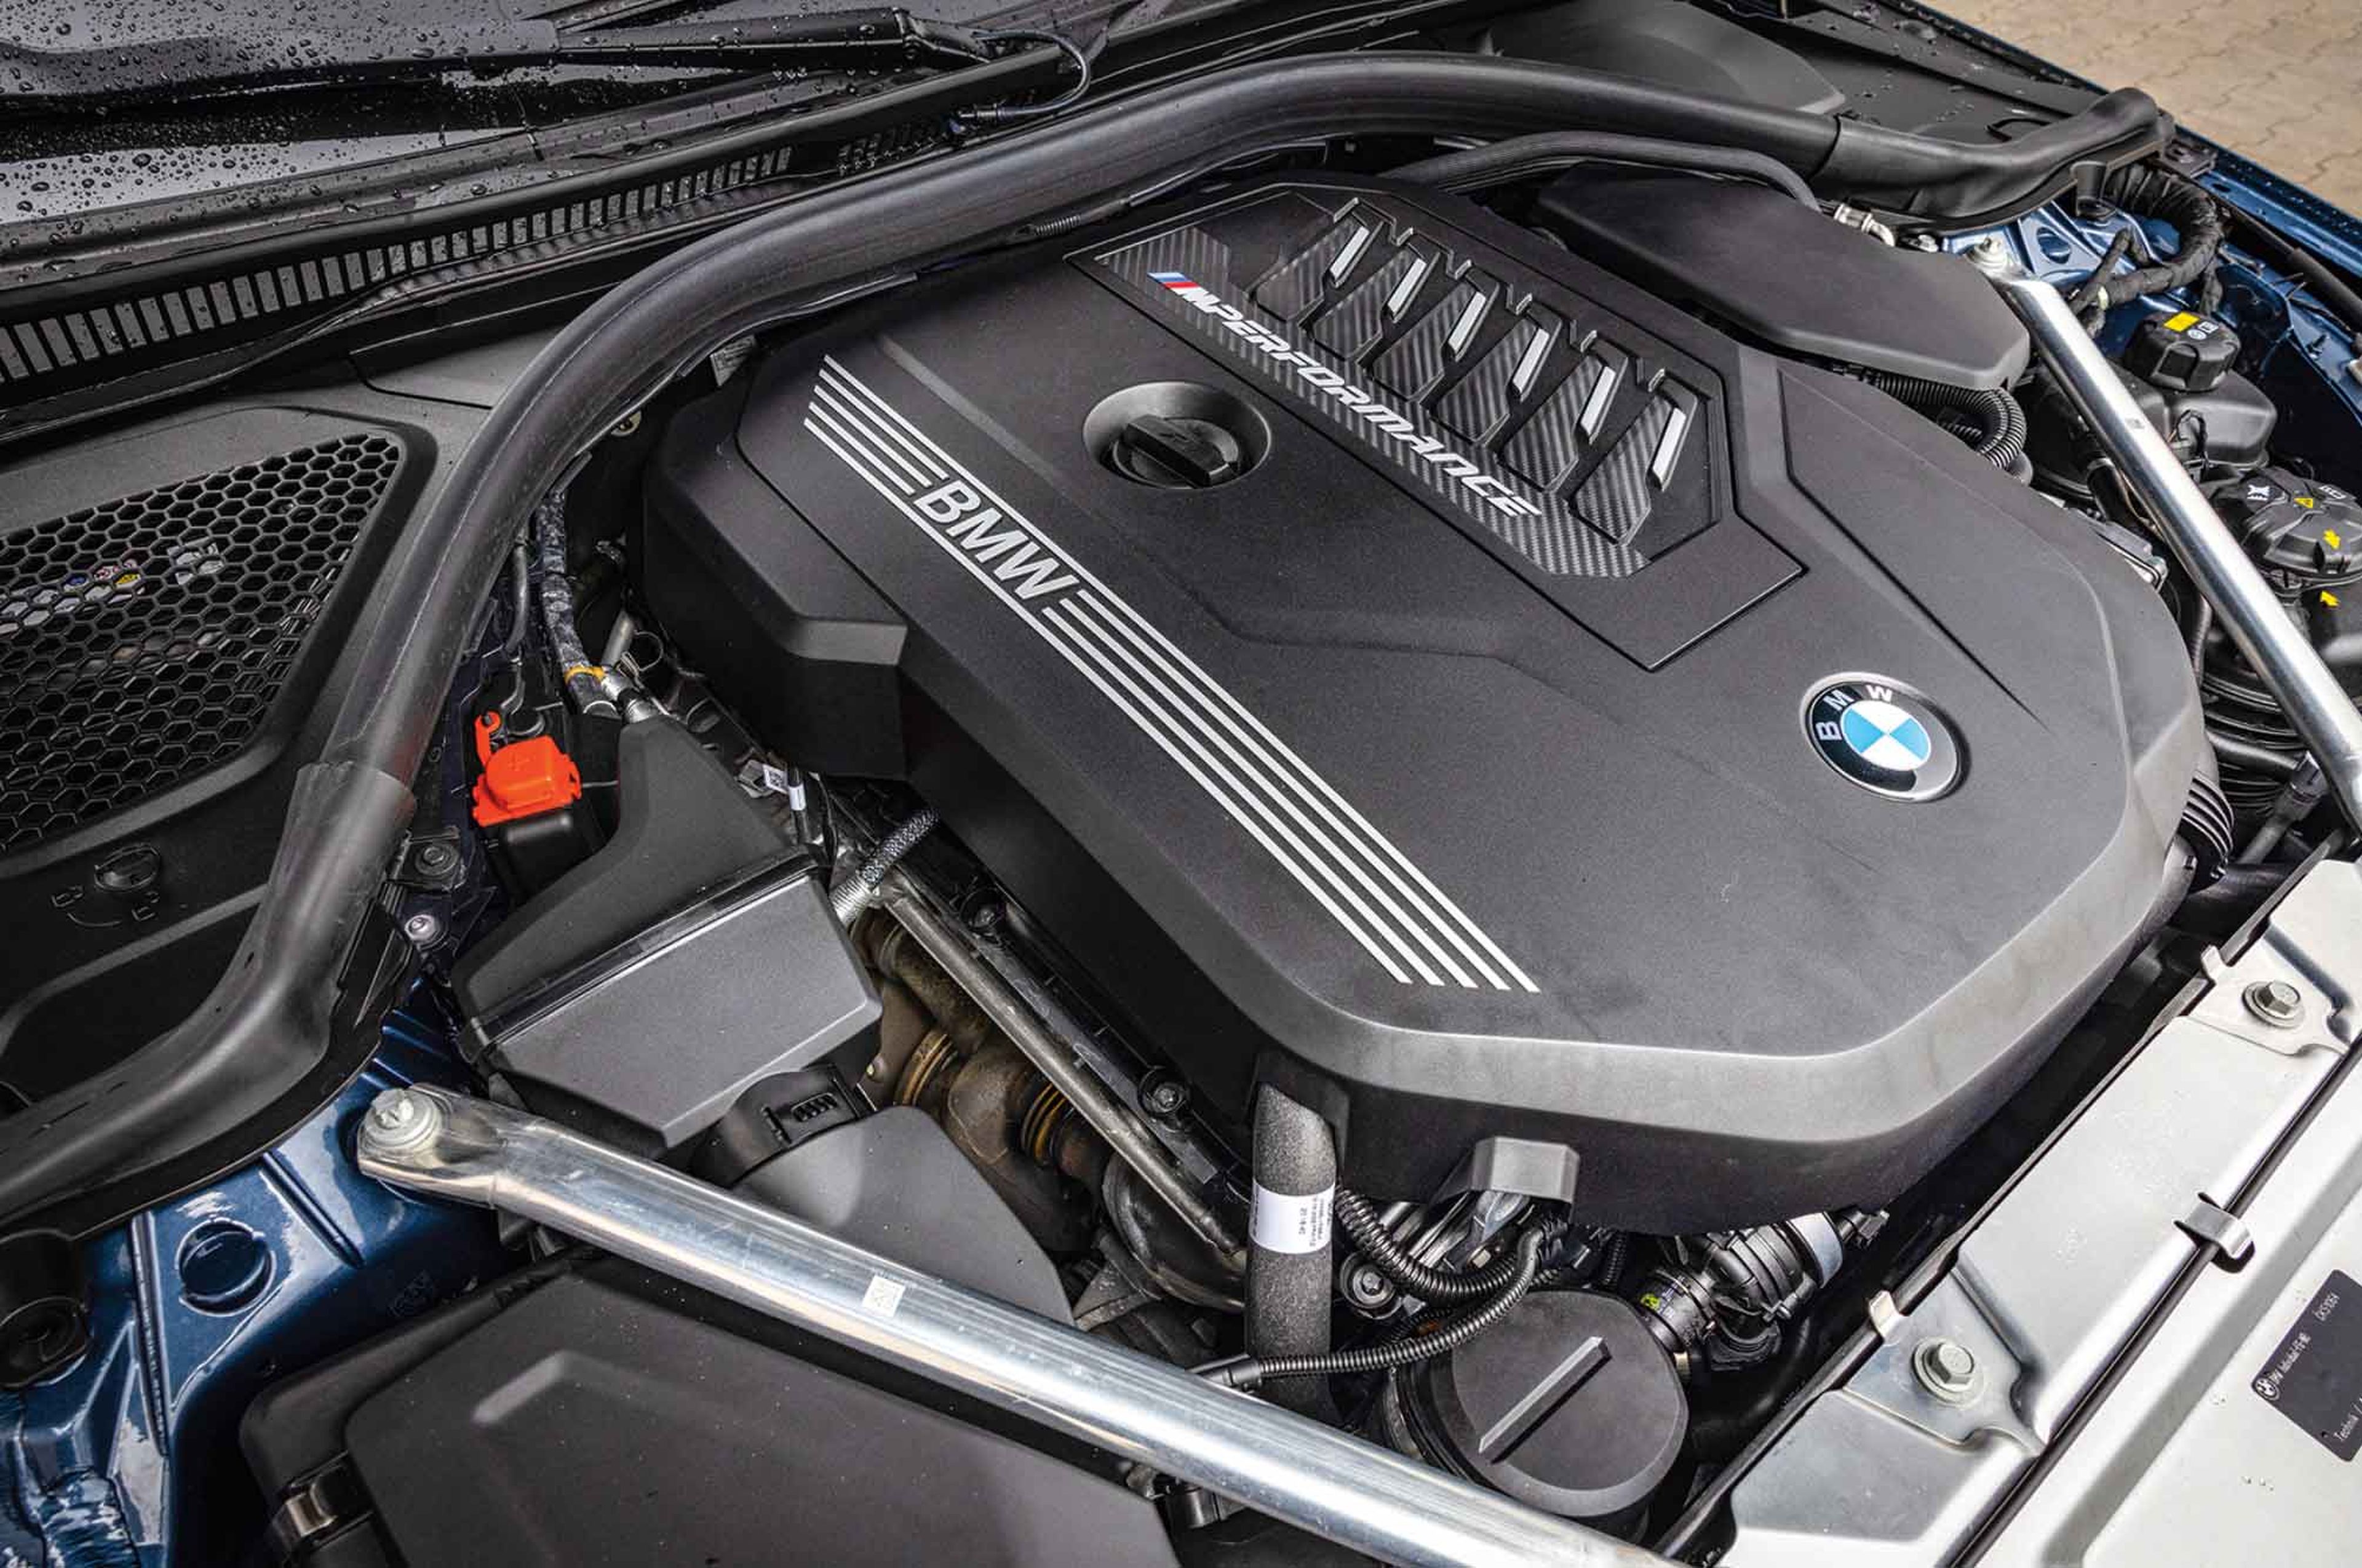 Diésel vs gasolina, BMW M44i vs M440d motor 2